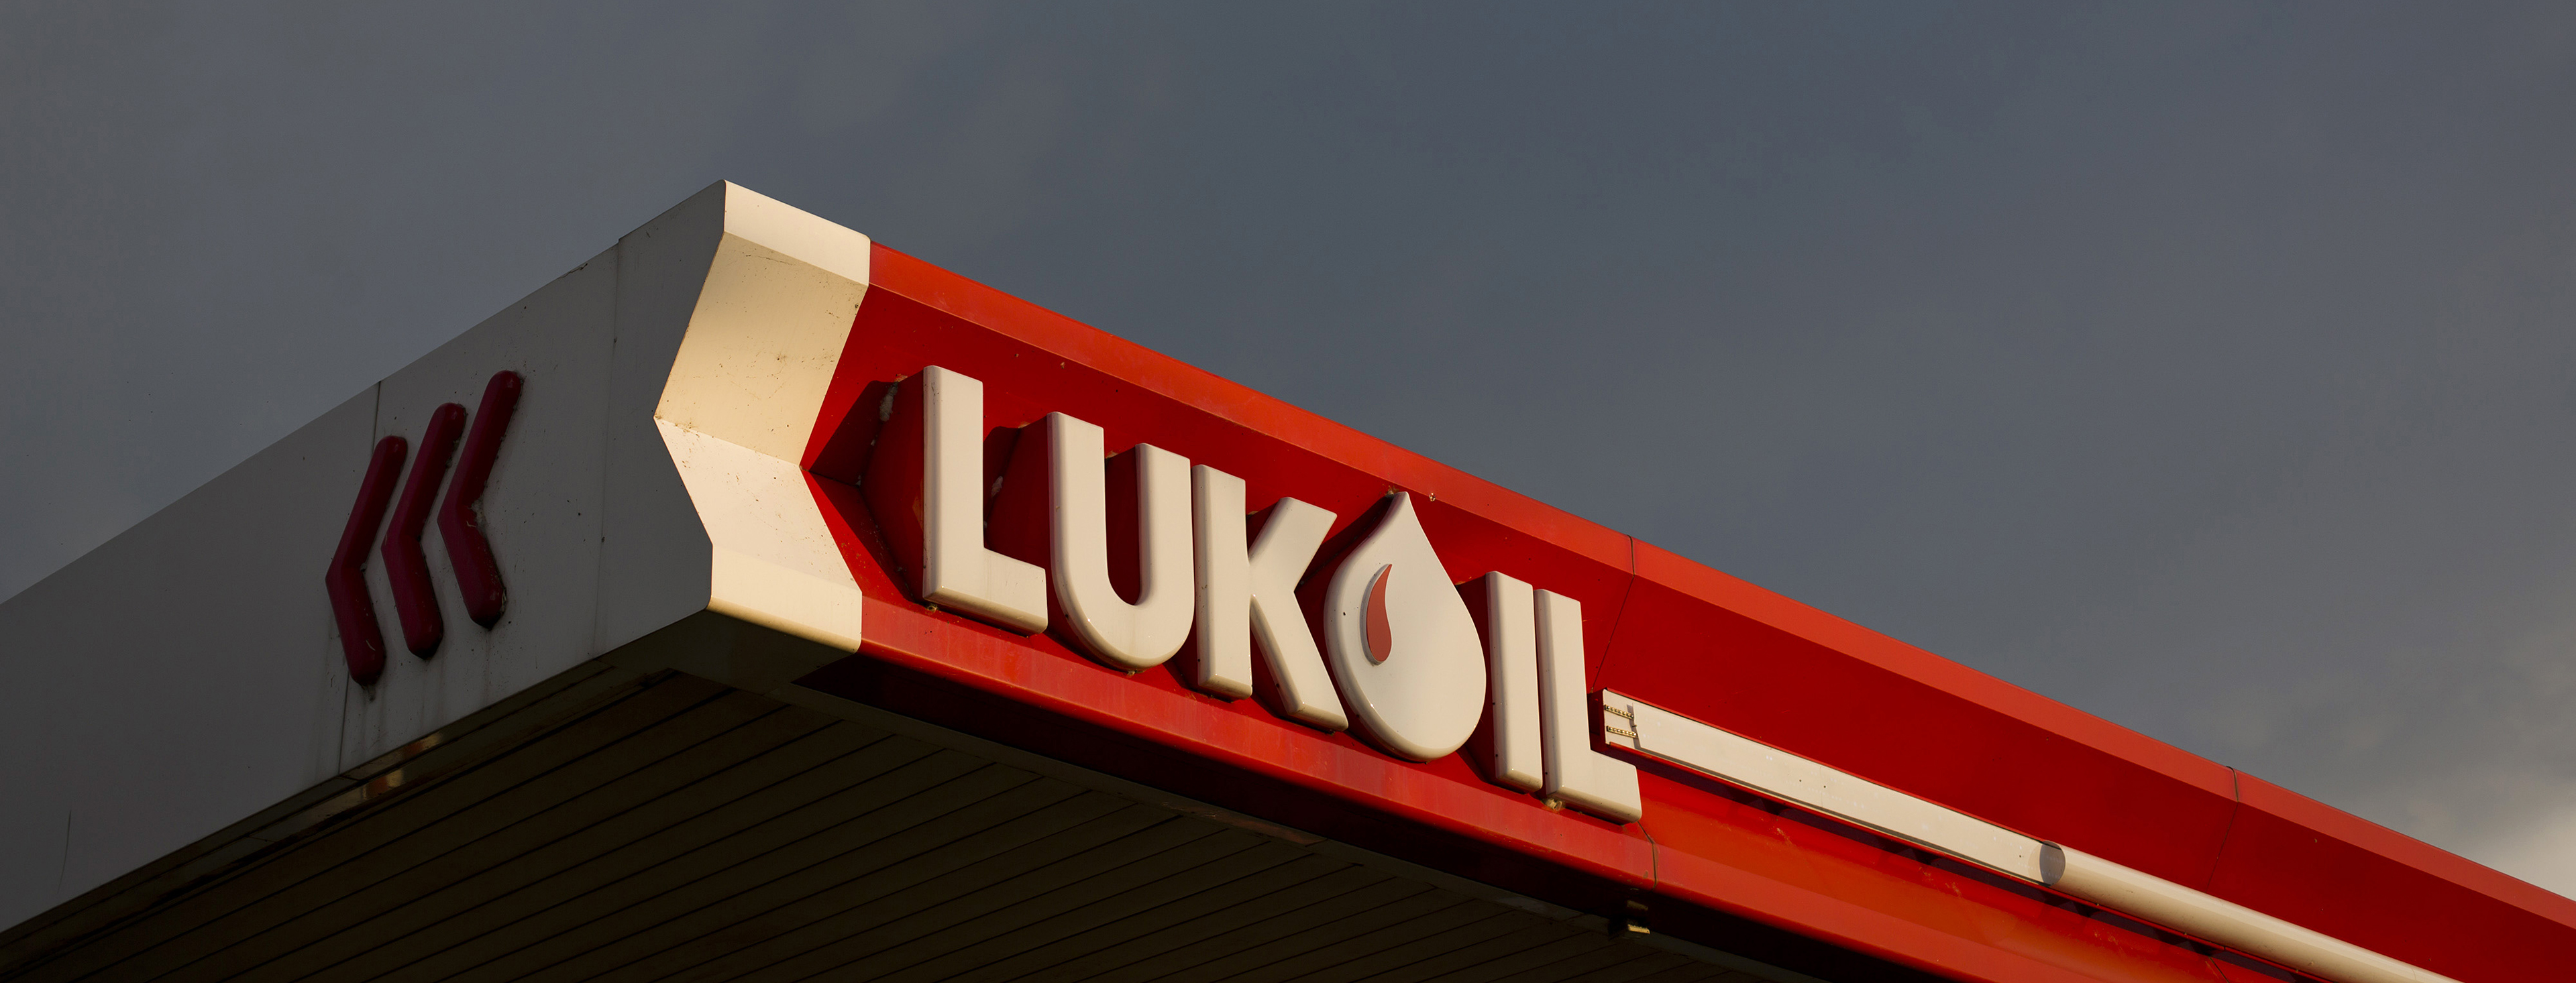 Rus Lukoil şirketi Özbekistan’da gaz işleme tesisi açtı